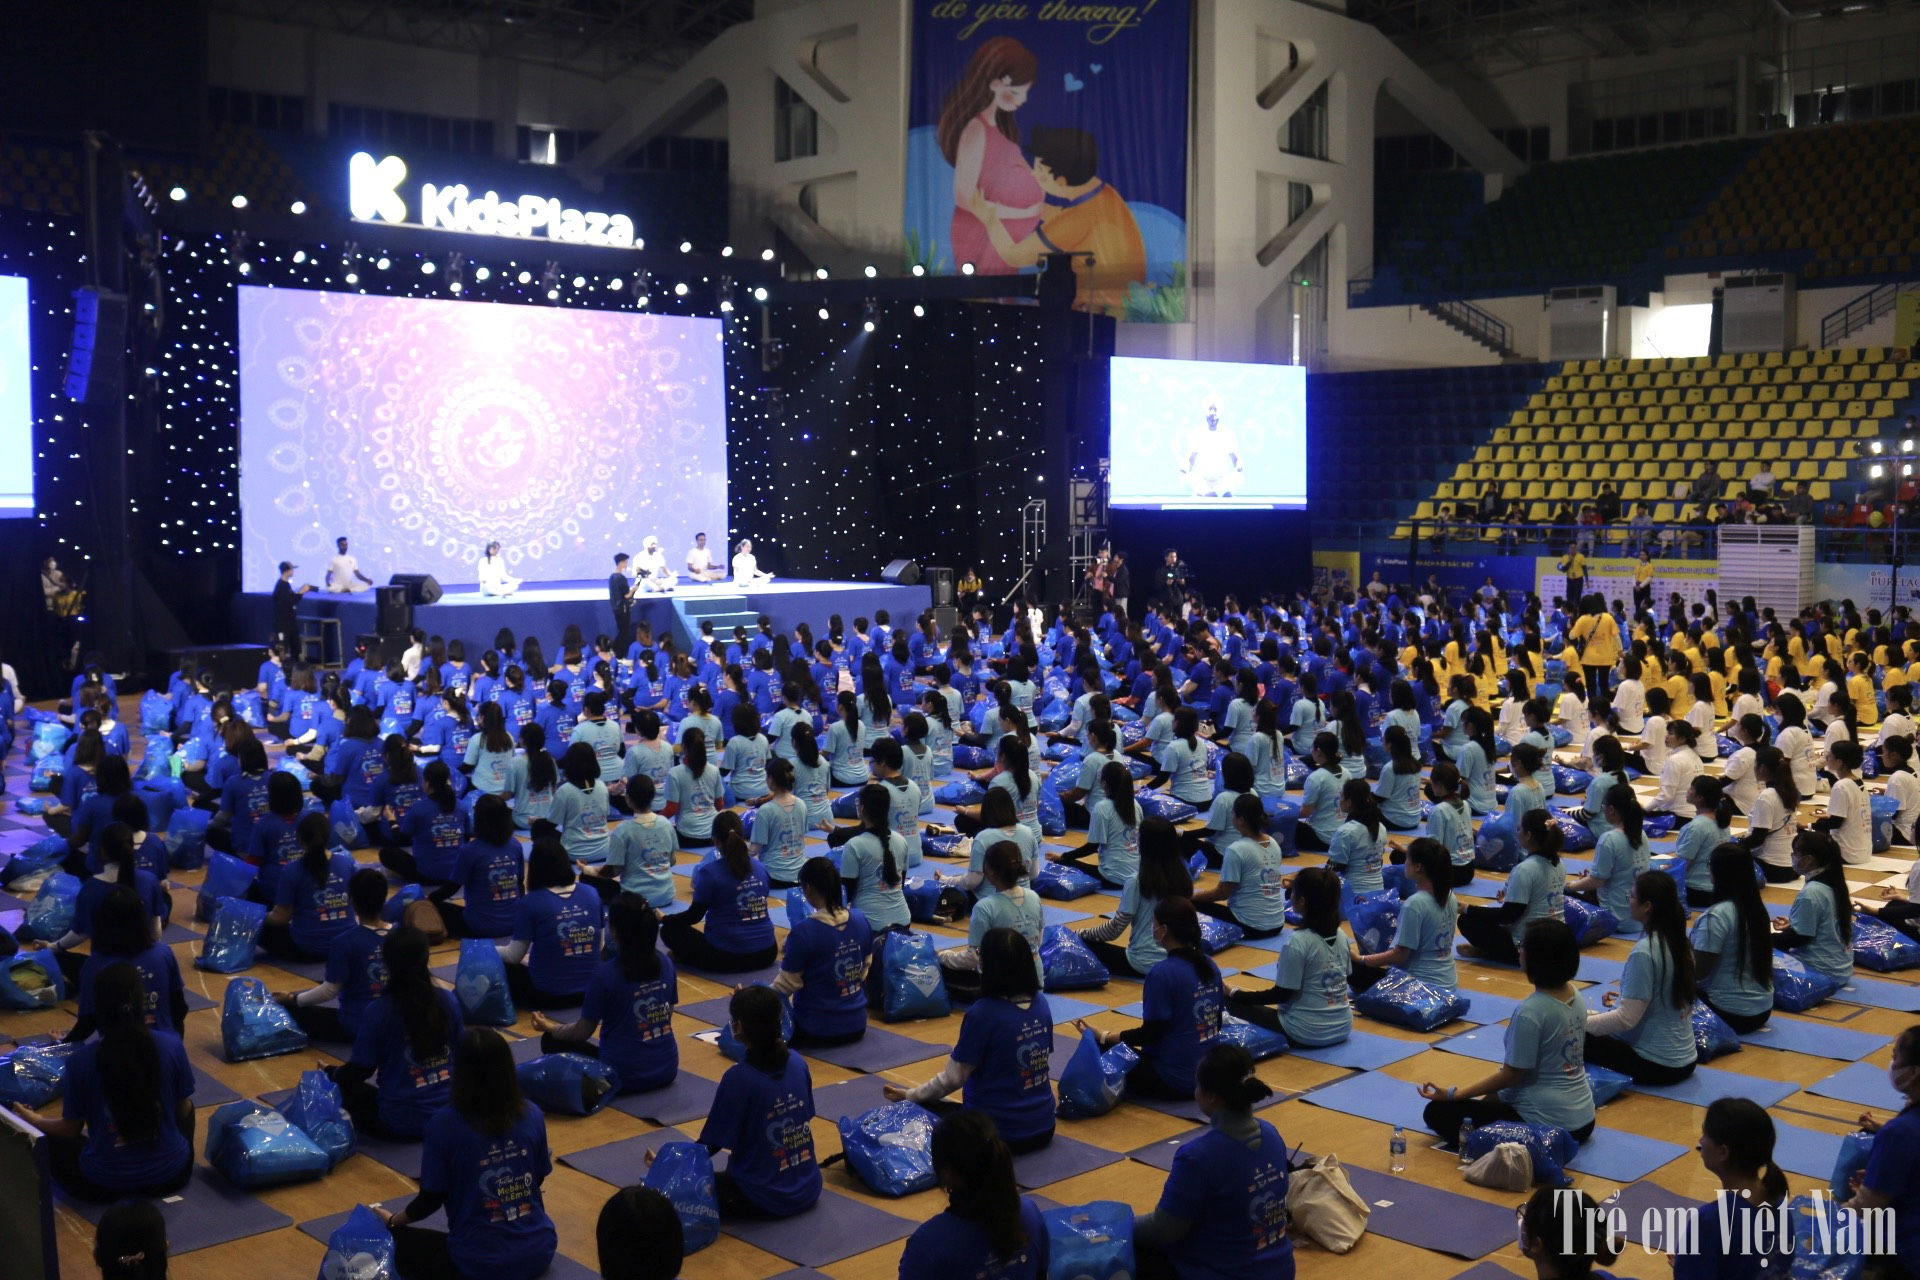 800 mẹ bầu đồng diễn Yoga truyền cảm hứng, lập kỷ lục Việt Nam 6